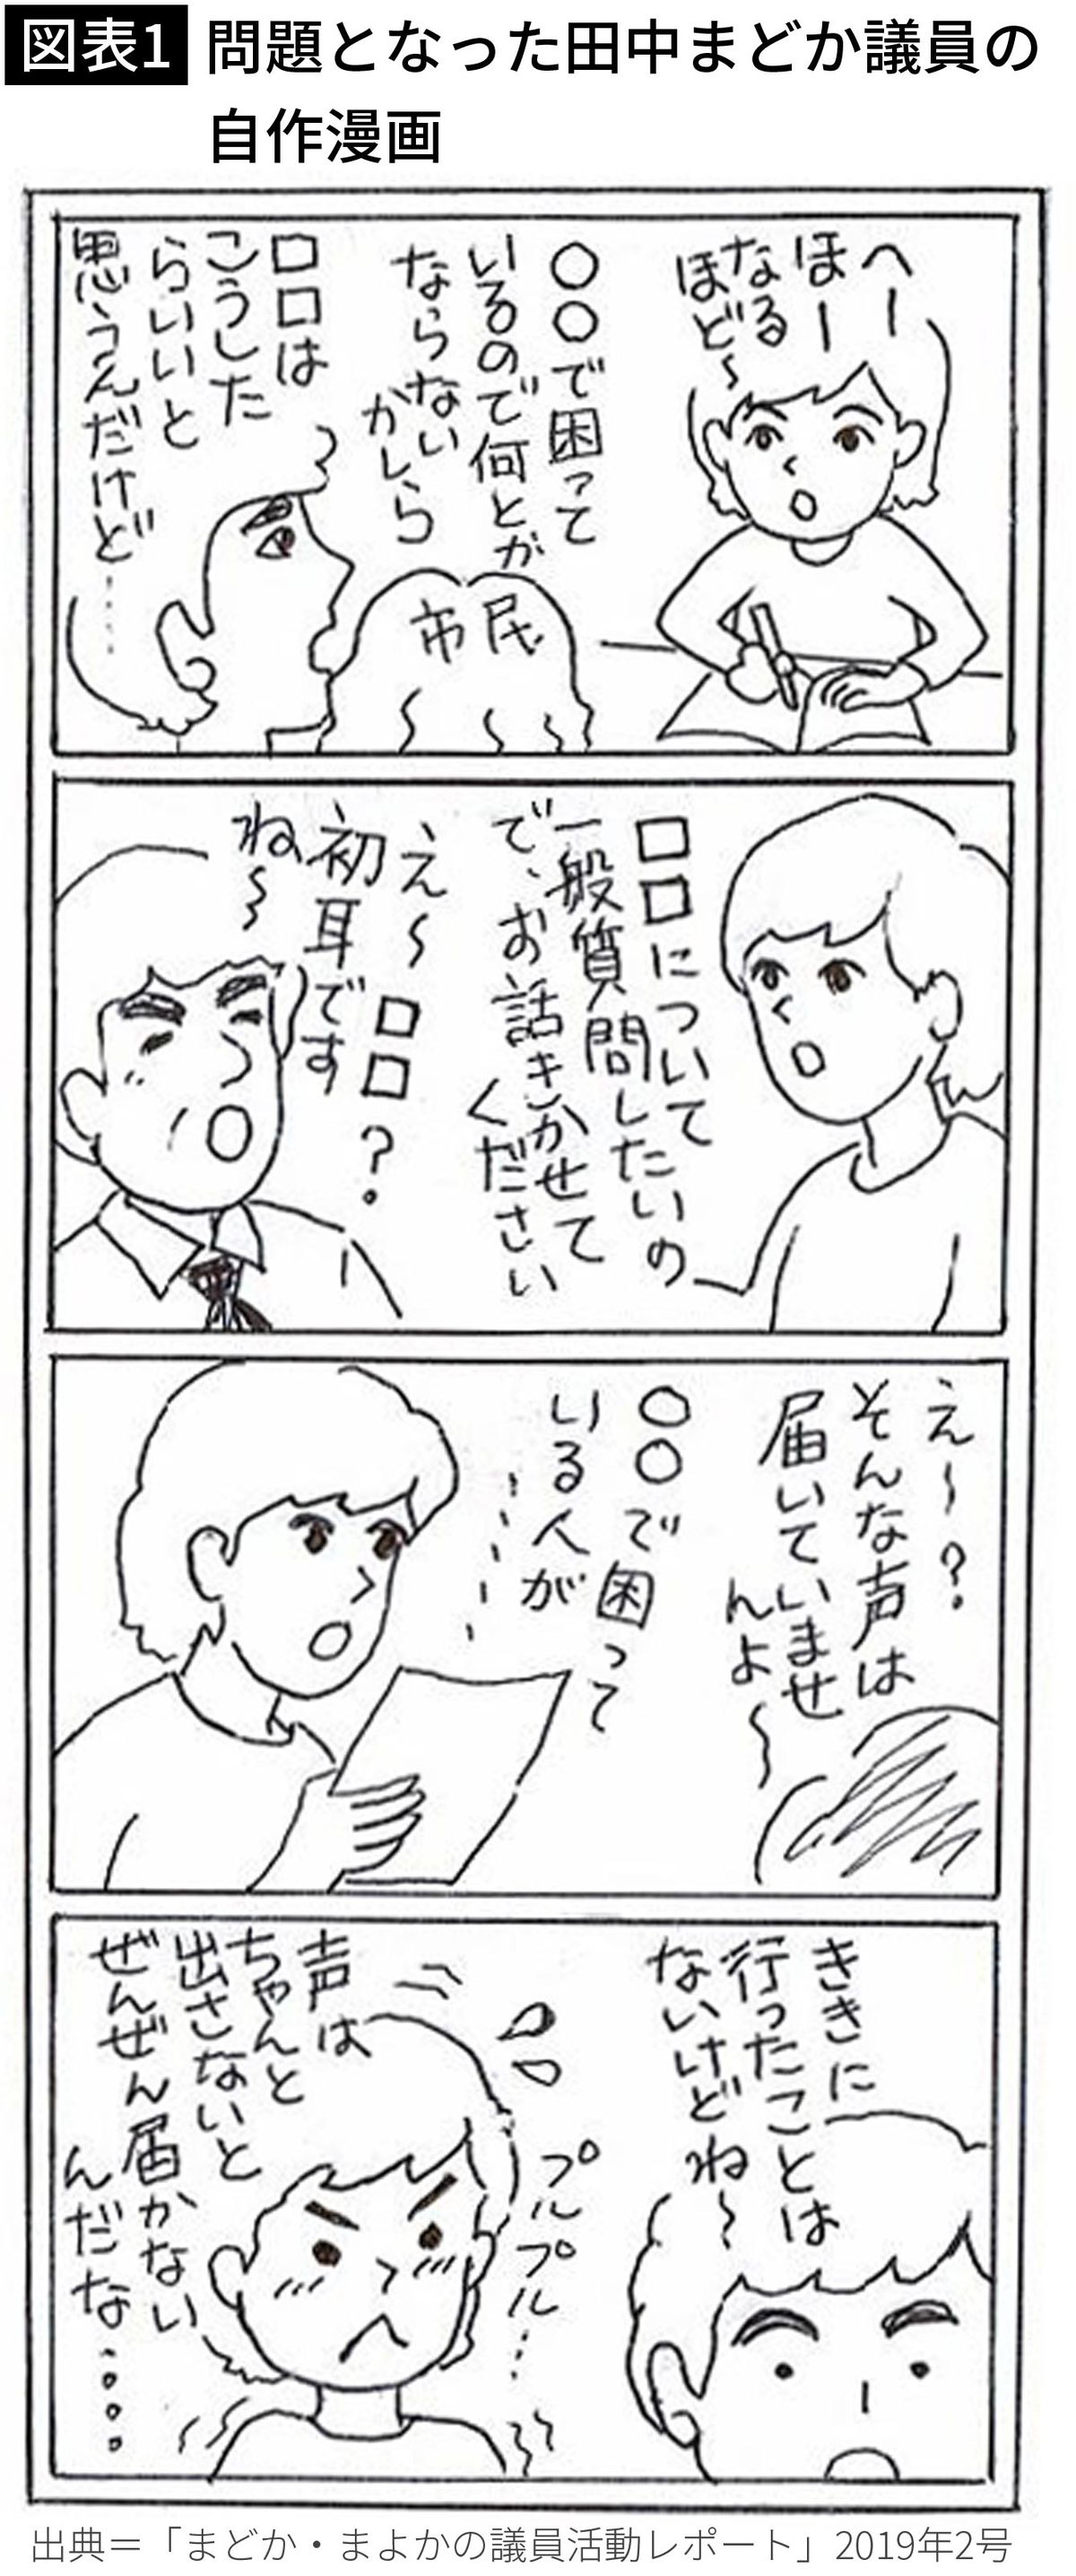 【図表1】問題となった田中まどか議員の自作漫画